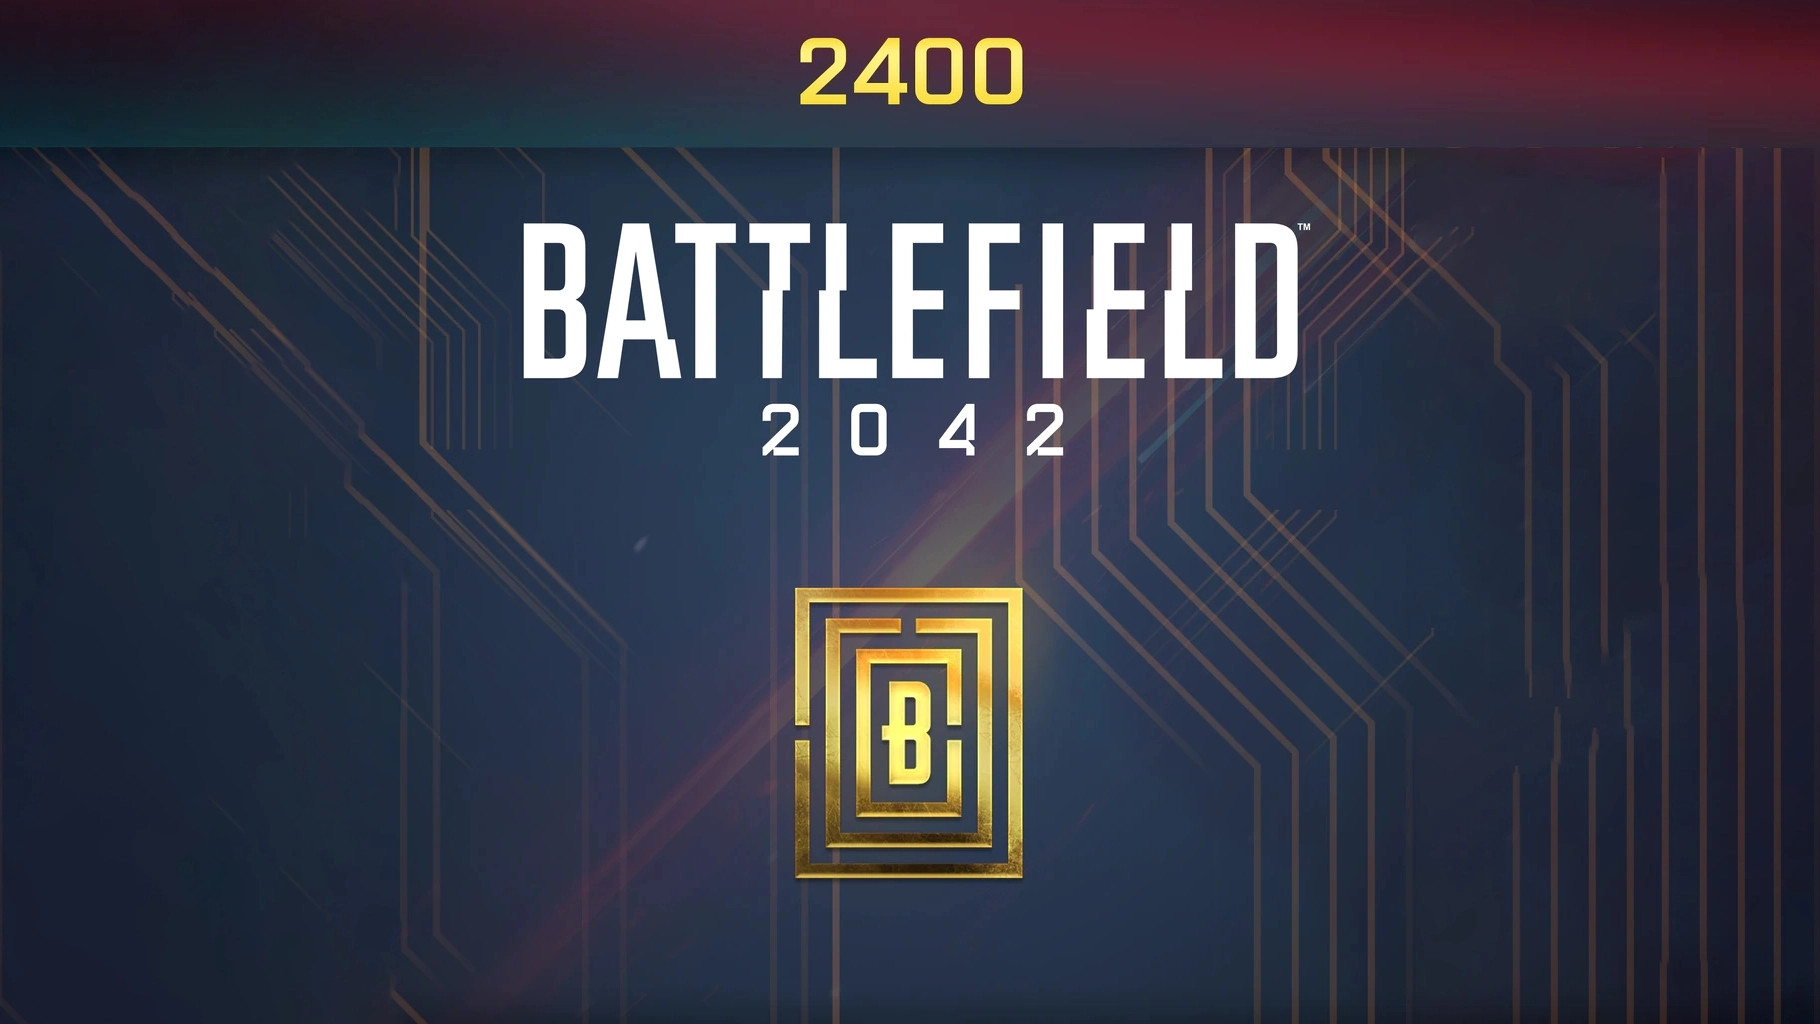 [$ 20.9] Battlefield 2042 - 2400 BFC Balance XBOX One / Xbox Series X|S CD Key